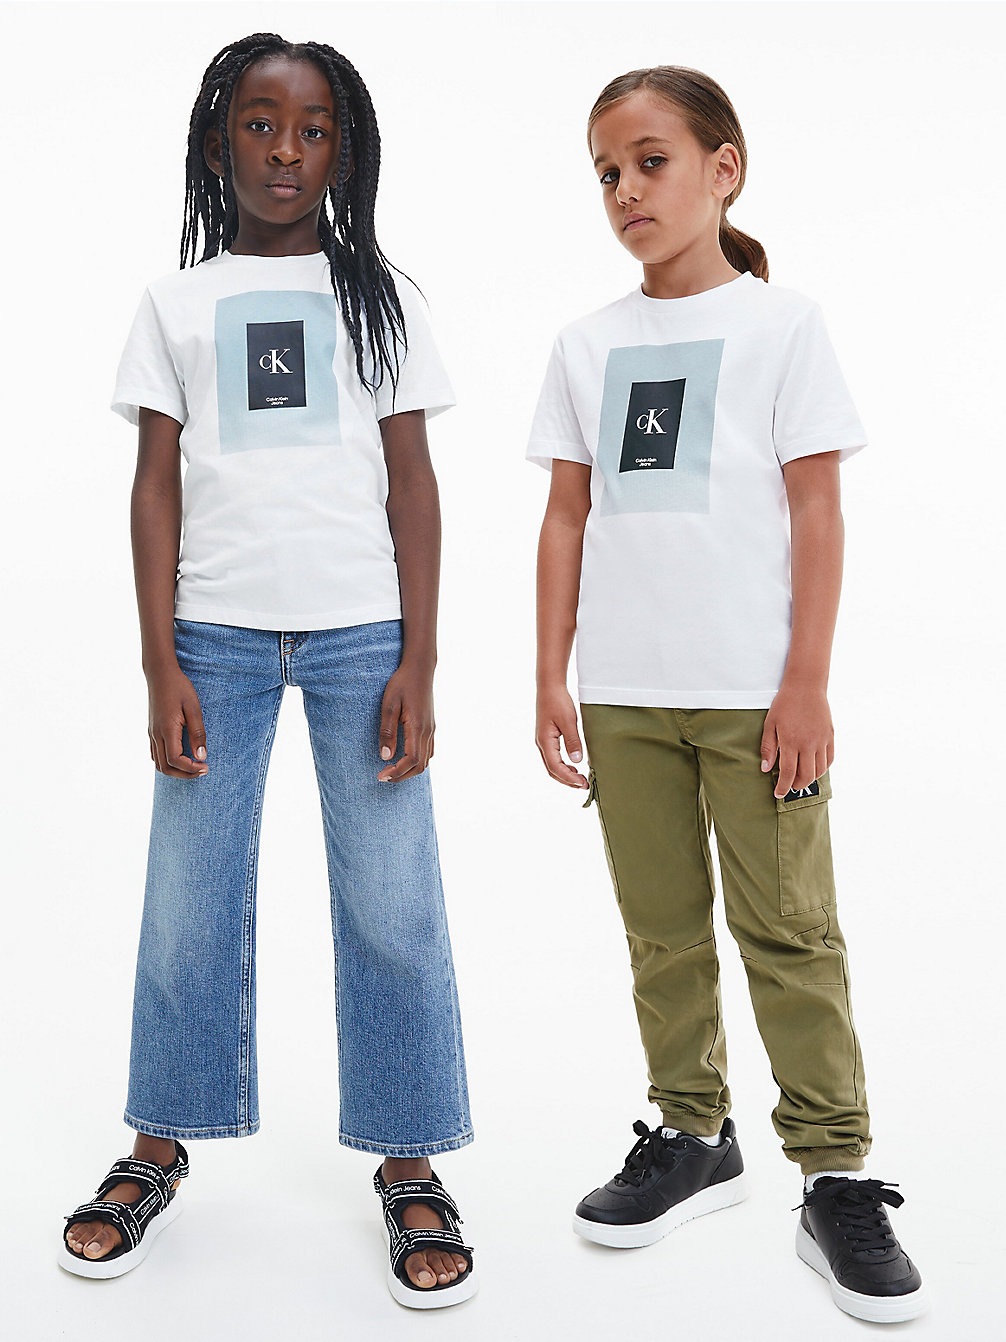 BRIGHT WHITE Unisex Organic Cotton T-Shirt undefined kids unisex Calvin Klein